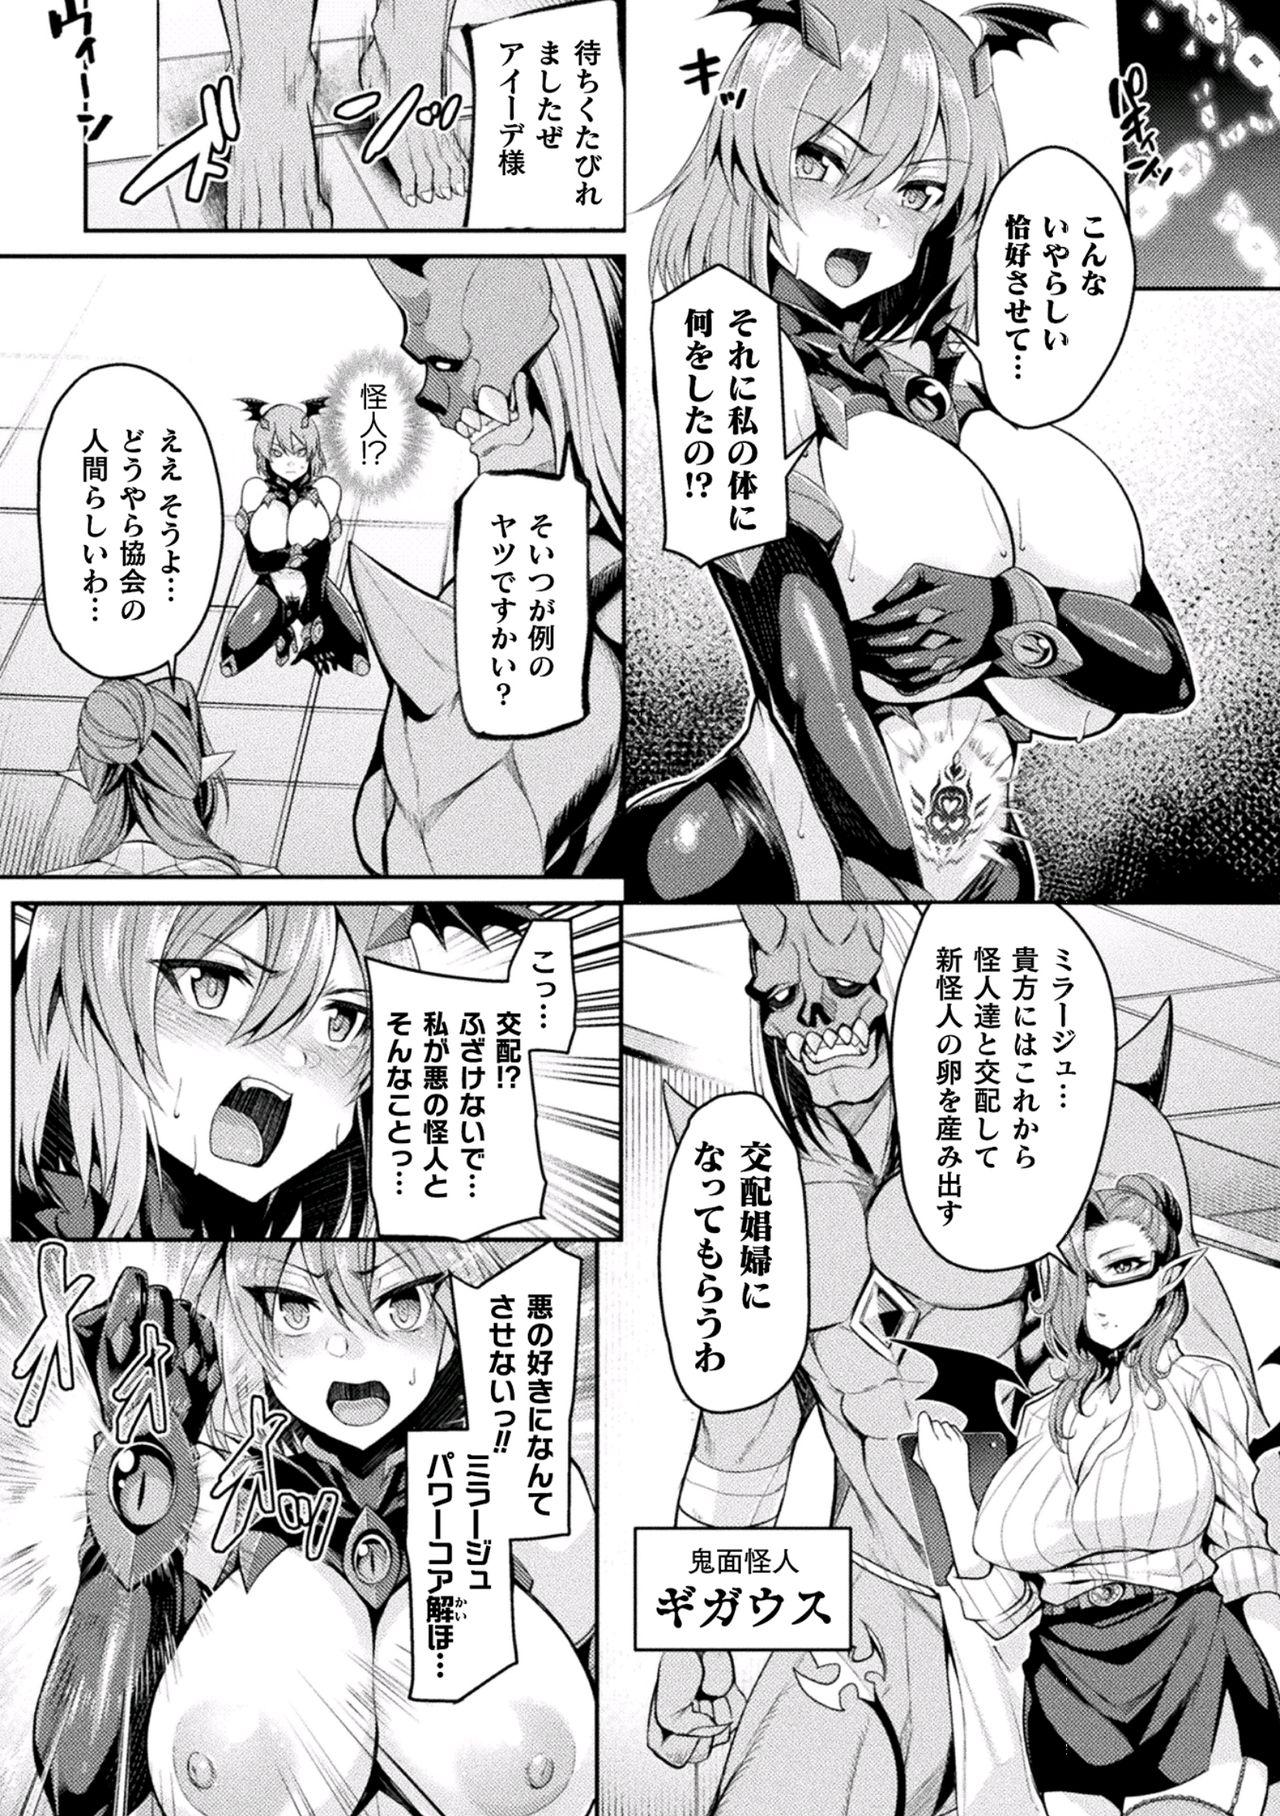 Bangbros 2D Comic Magazine Inmon wo Tsukerareta Bishoujo-tachi ga Sanran Akume Ochi! Vol. 1 Naija - Page 8